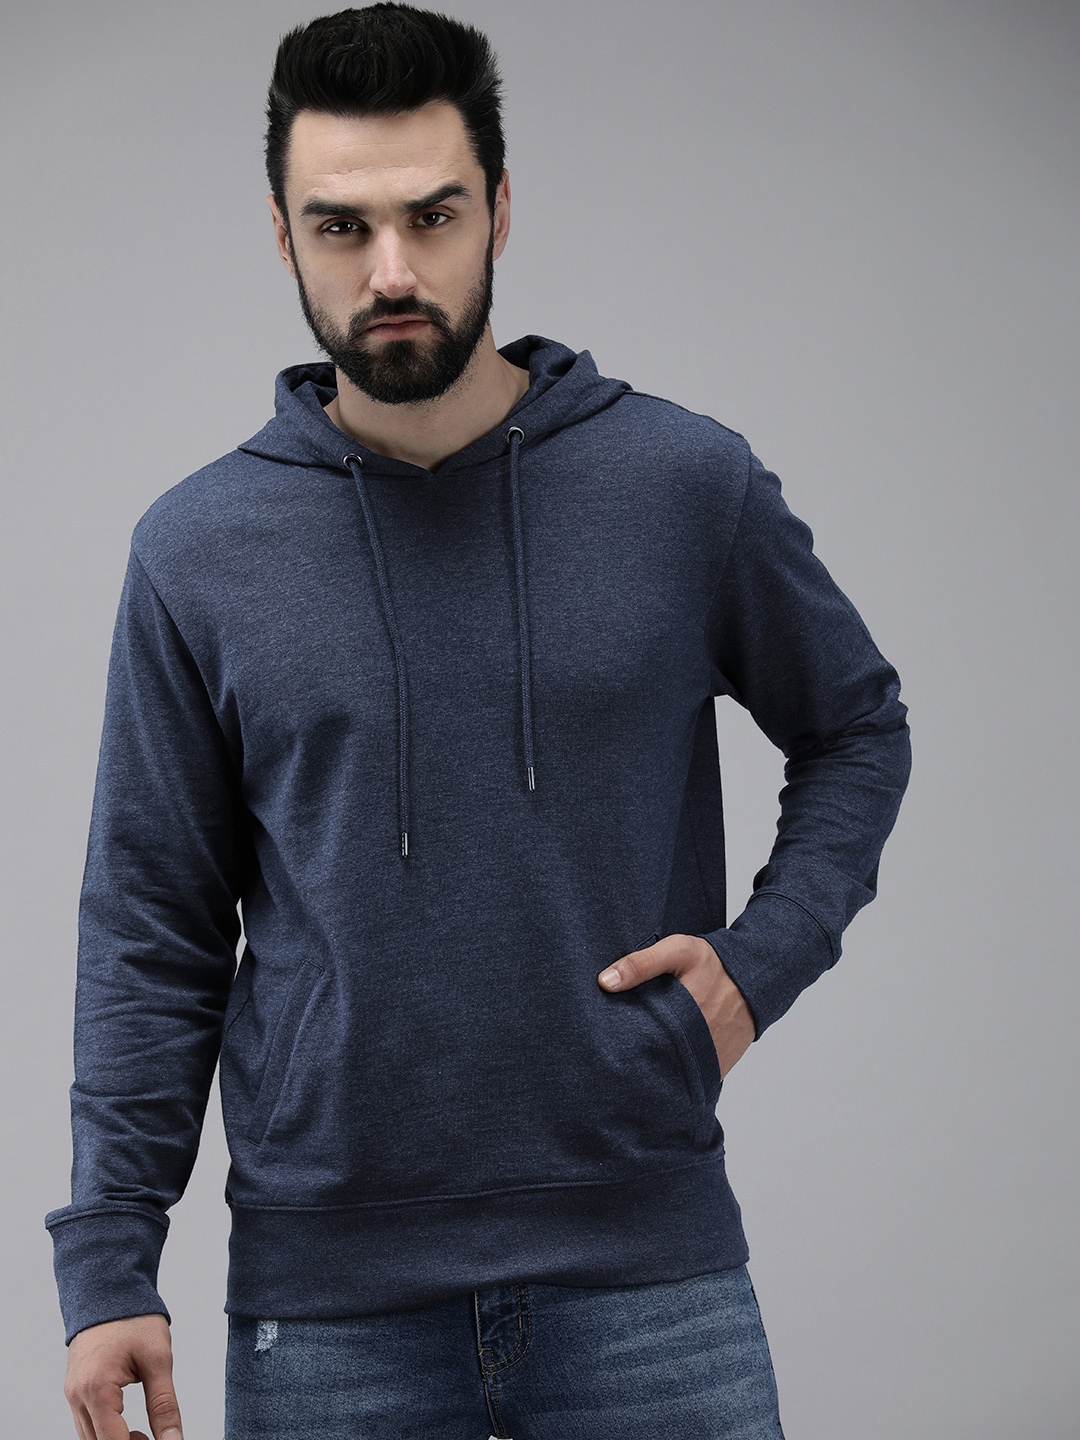 Buy Roadster Men Blue Solid Hooded Sweatshirt - Sweatshirts for Men ...